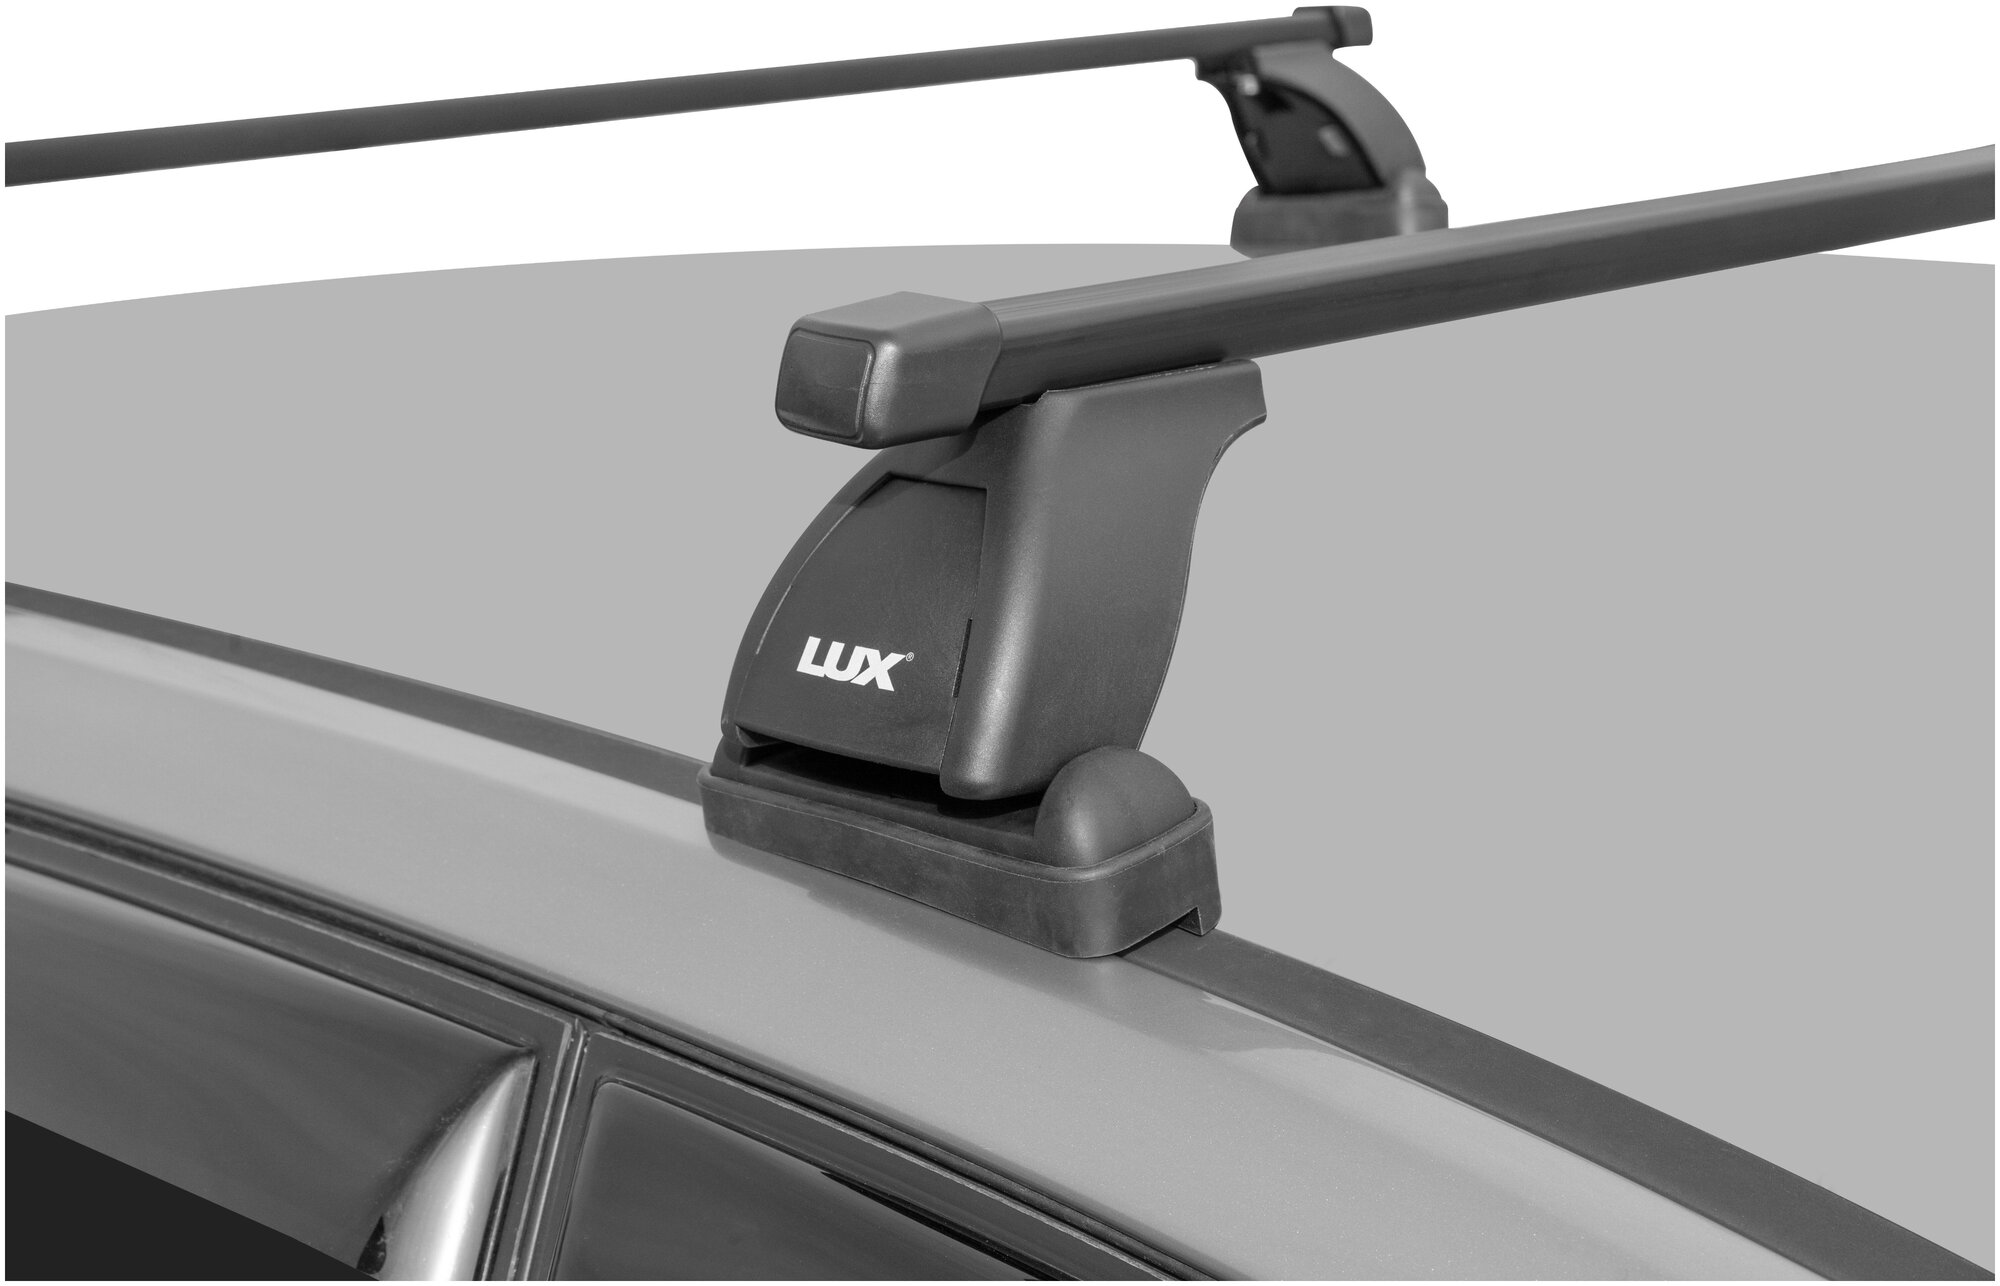 Багажная система "LUX" с дугами 1,2м прямоугольными в пластике для а/м Mercedes-Benz B-classe W246 2011-. г. в. (ШМ988-T)